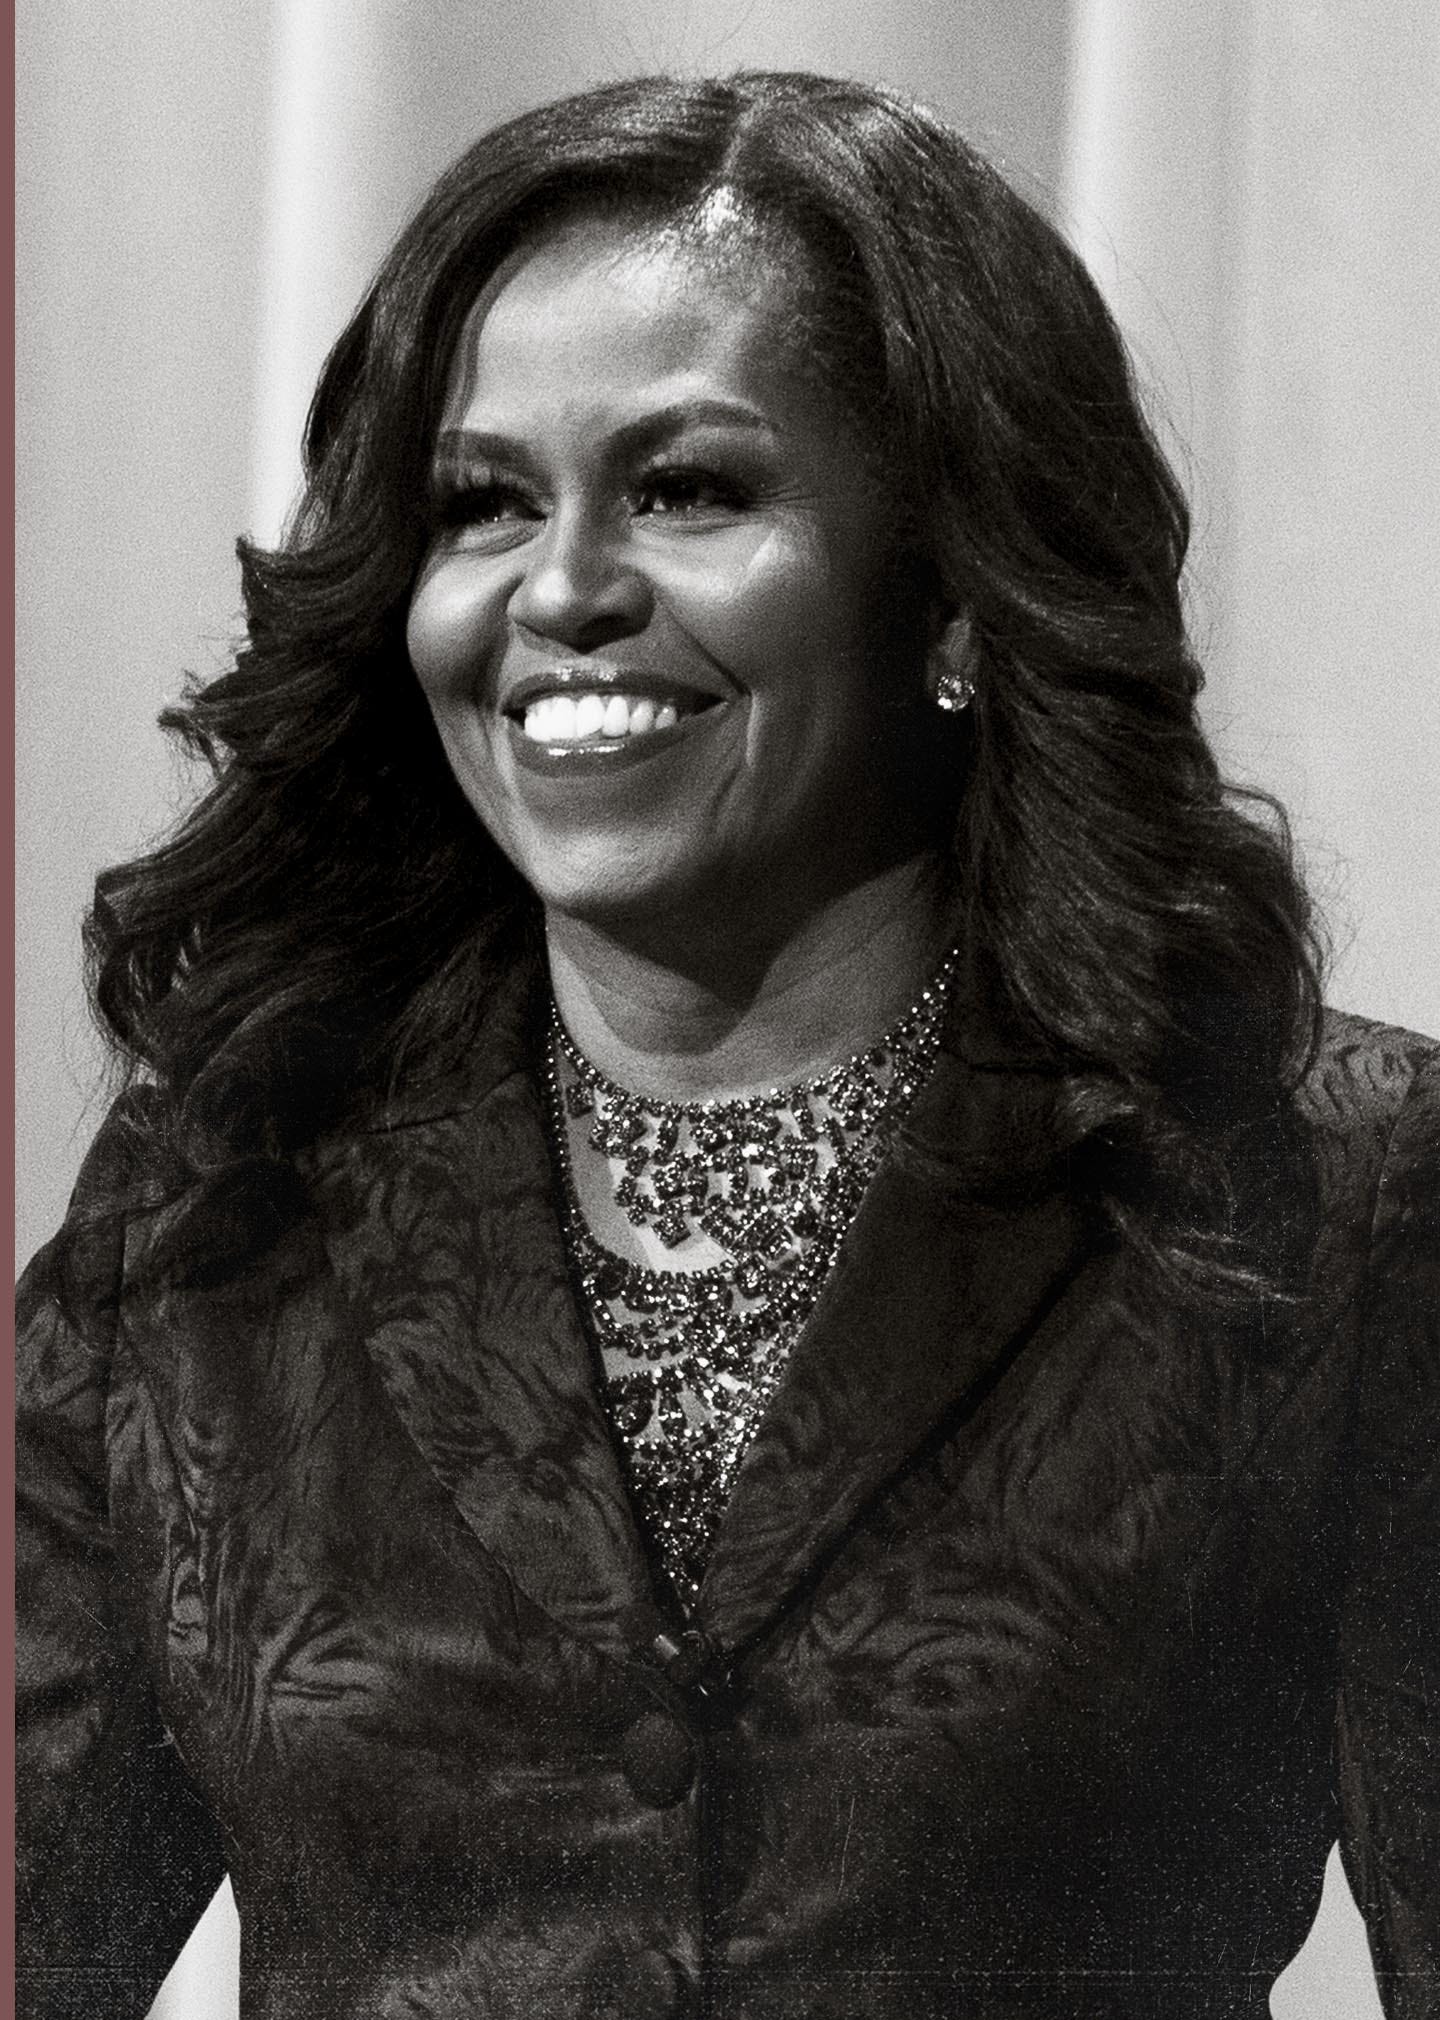 Michelle Obama
